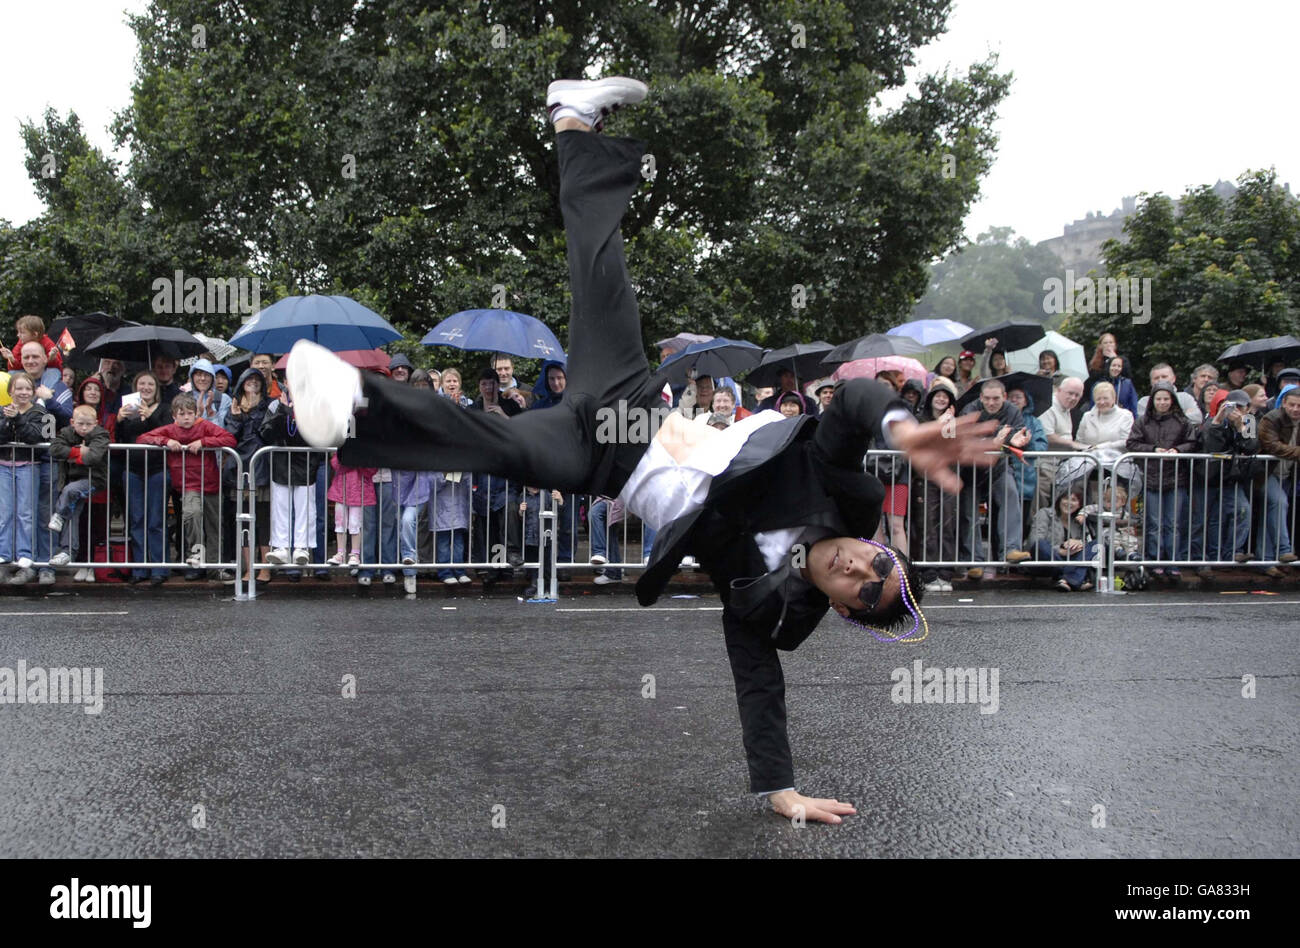 Un ballerino break si esibisce nella parata mentre gli spettatori sfidano la pioggia mentre l'annuale Edinburgh Festival Cavalcade si fa strada attraverso le strade della capitale scozzese. Foto Stock